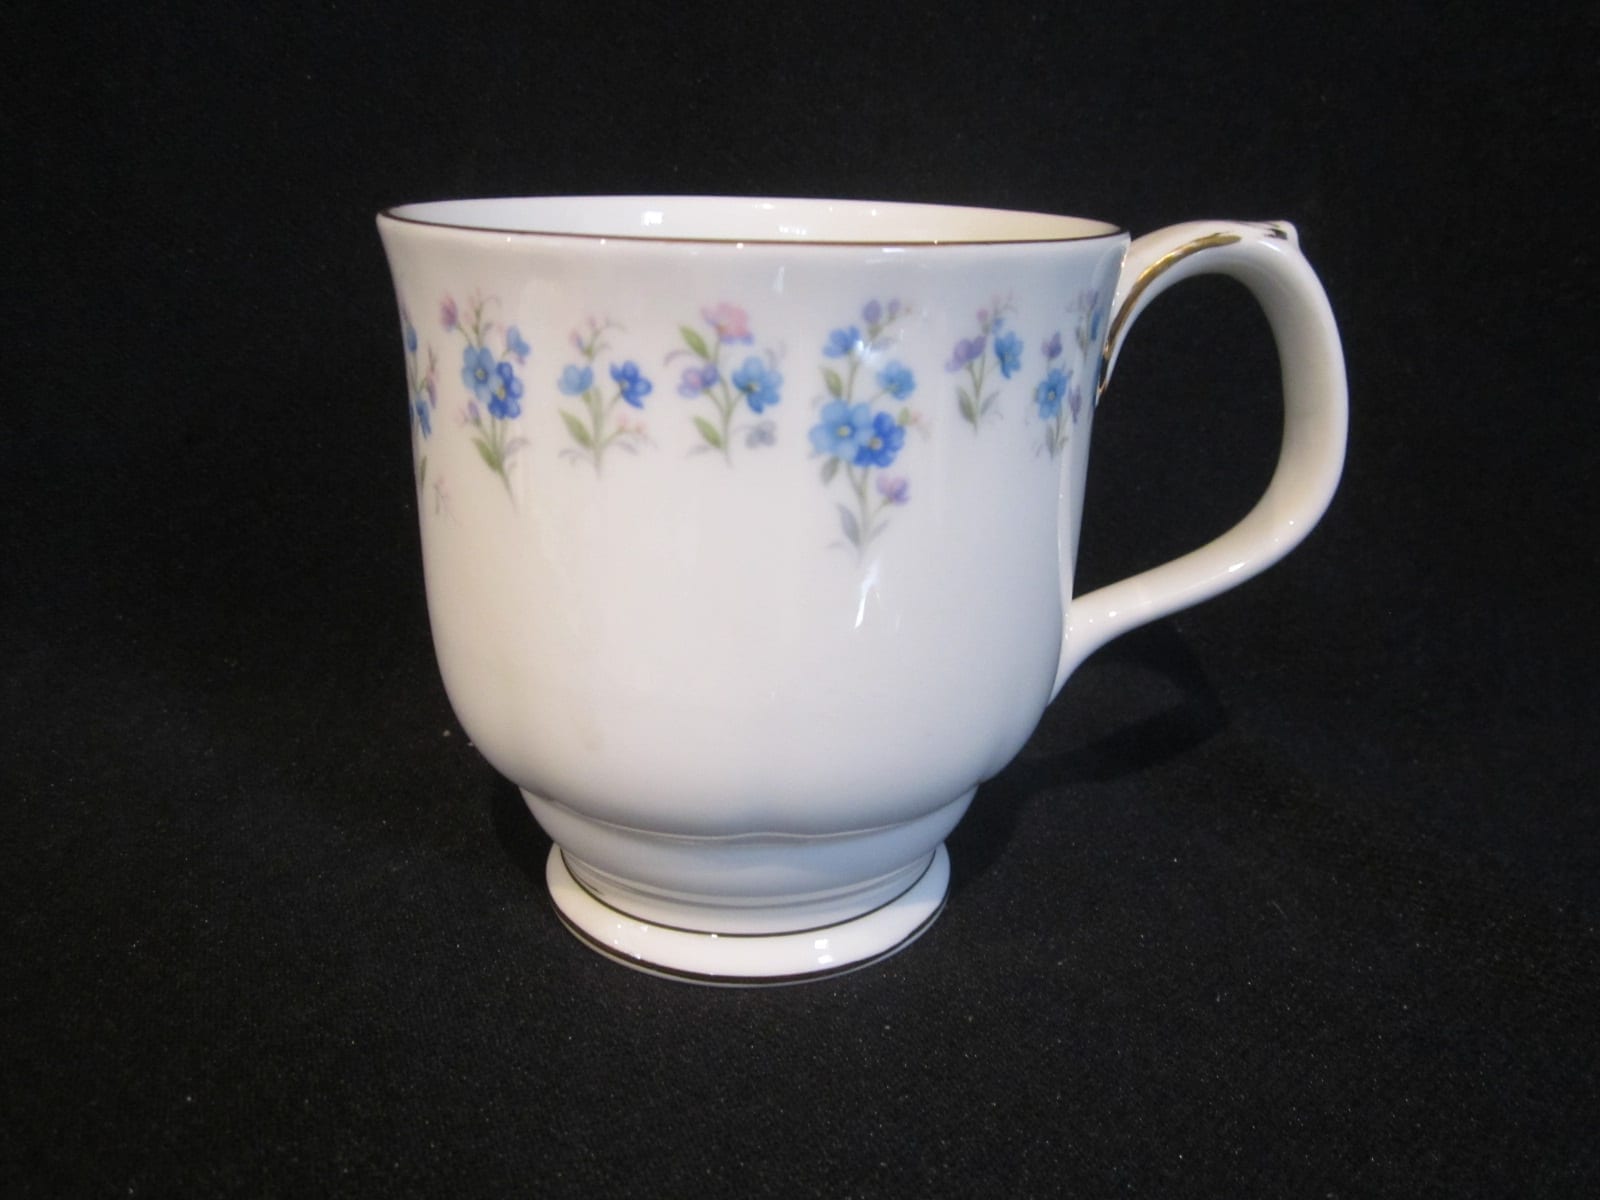 s Royal Albert Memory Lane Gainsborough Shape Coffee Mug